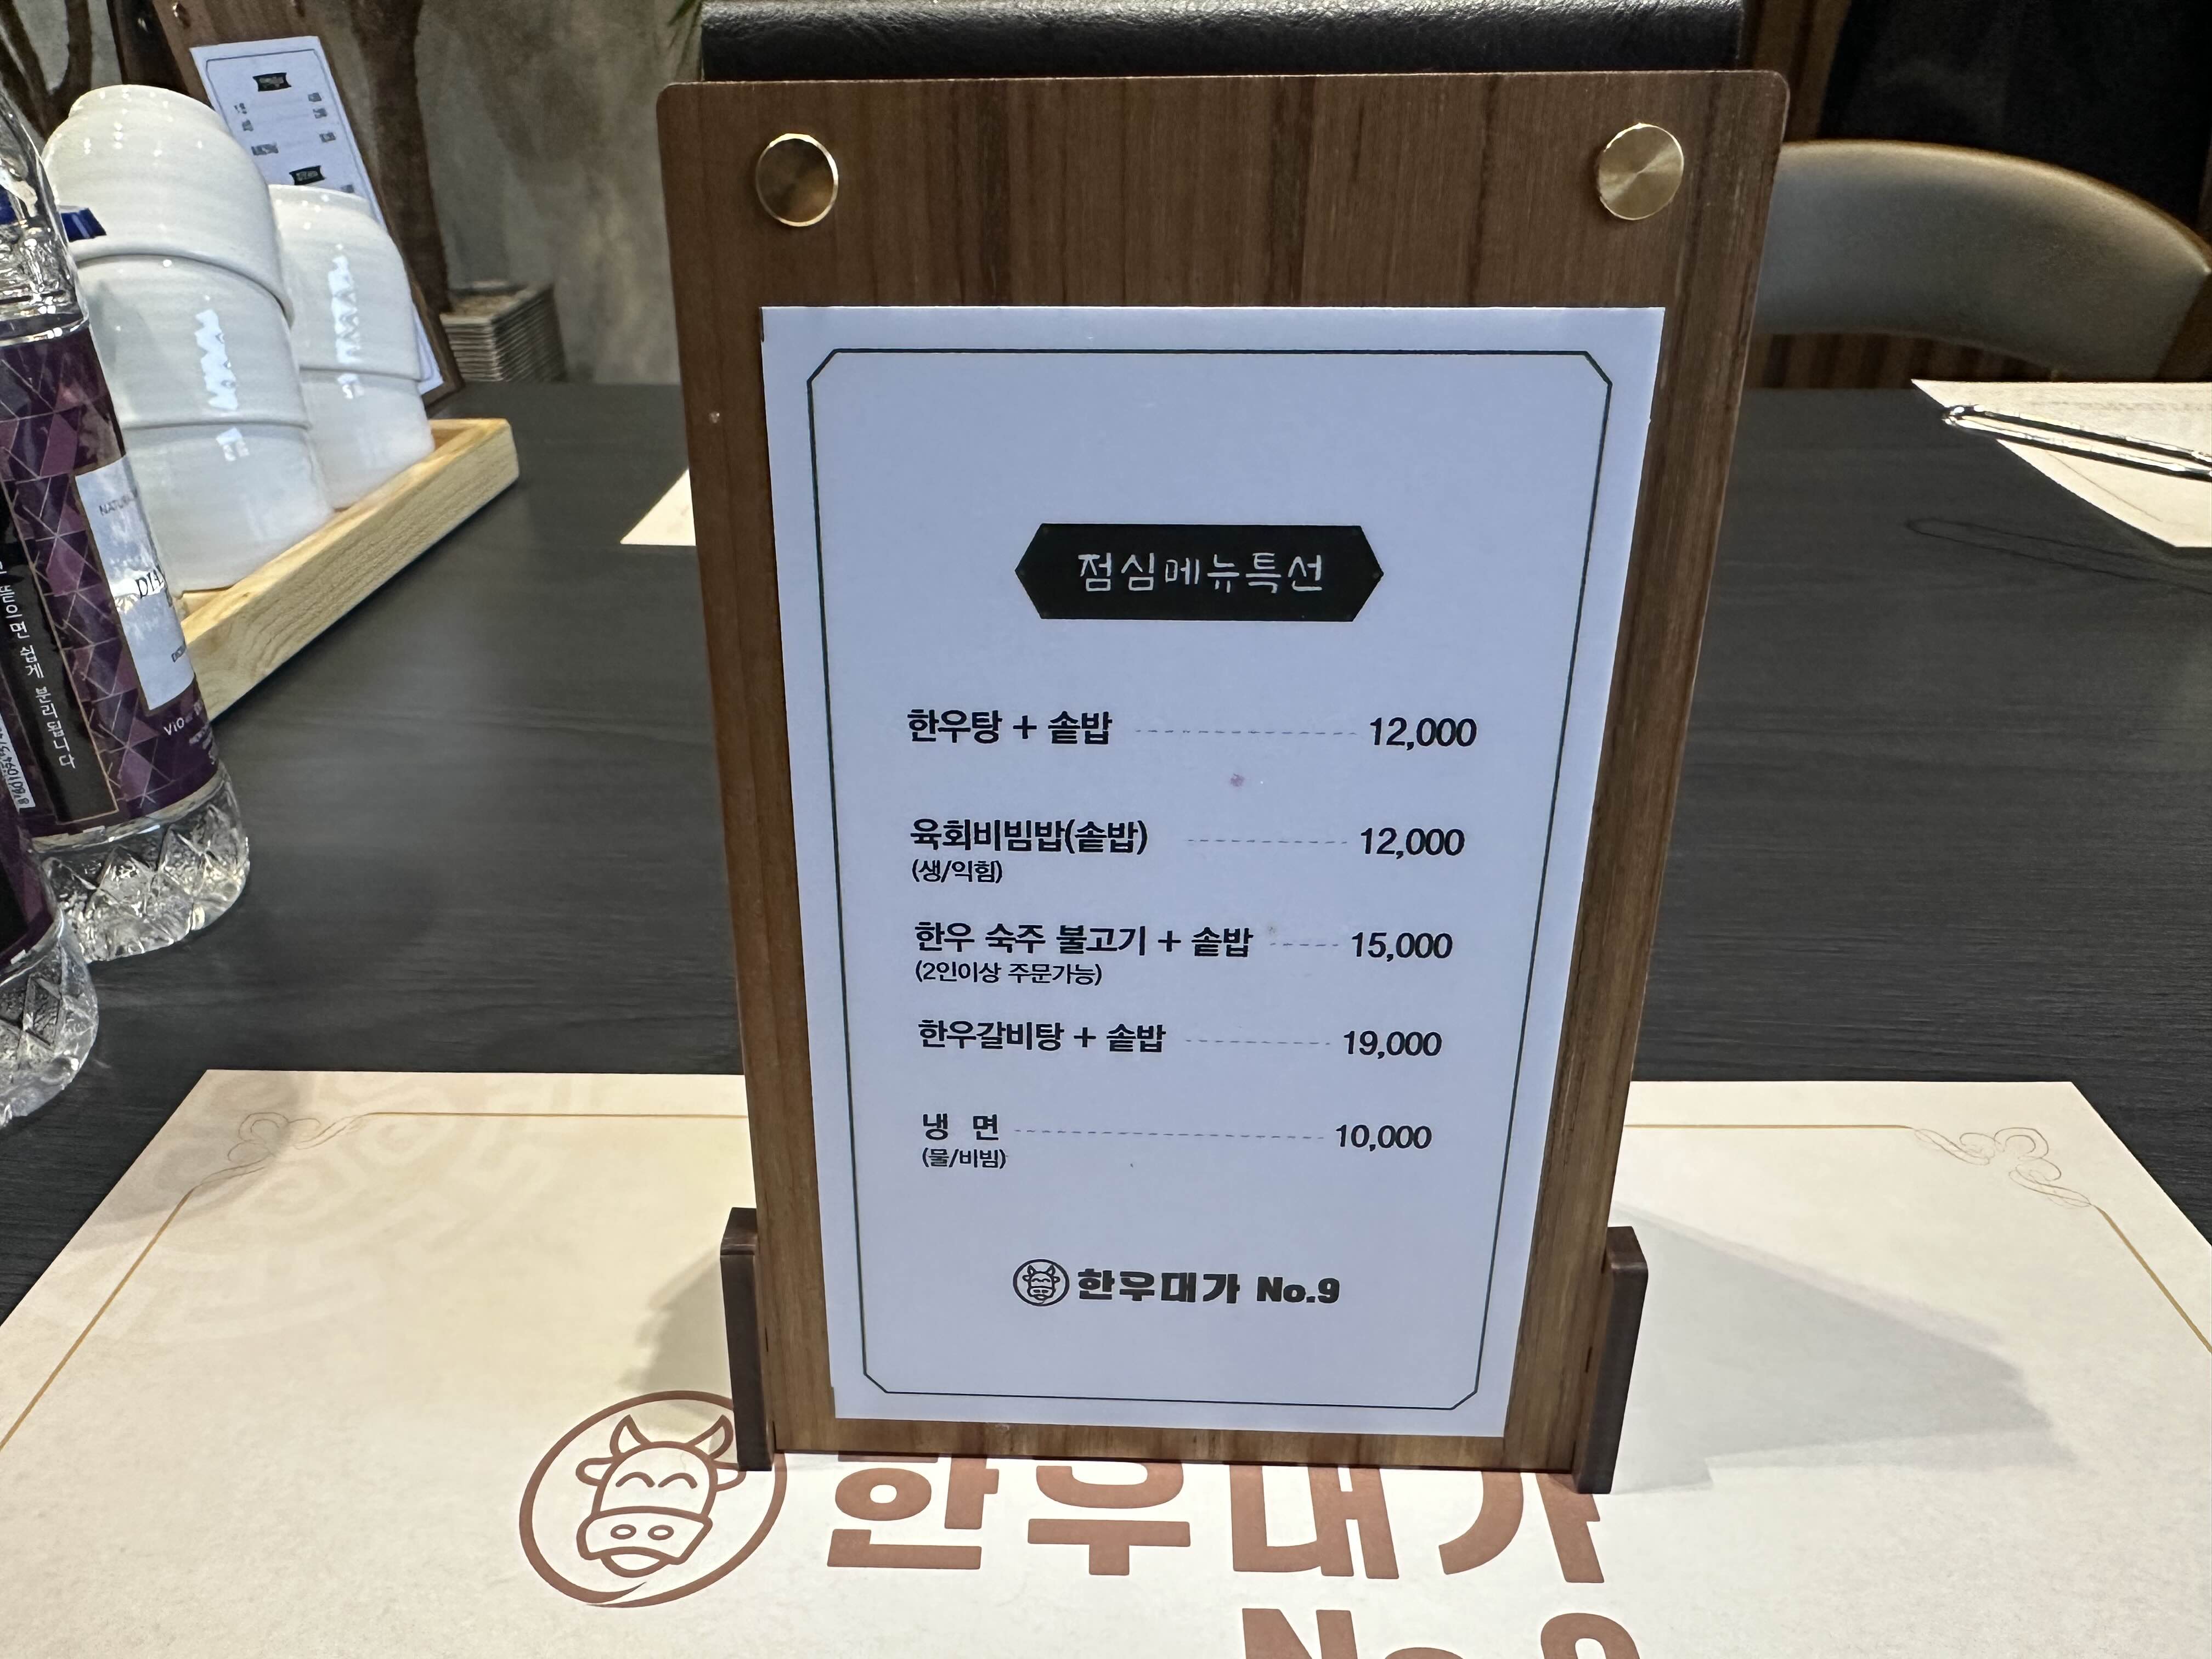 광양 맛집 광양읍 한우 대가 no.9 점심 식사 소고기 맛집 점심메뉴판 모습 사진